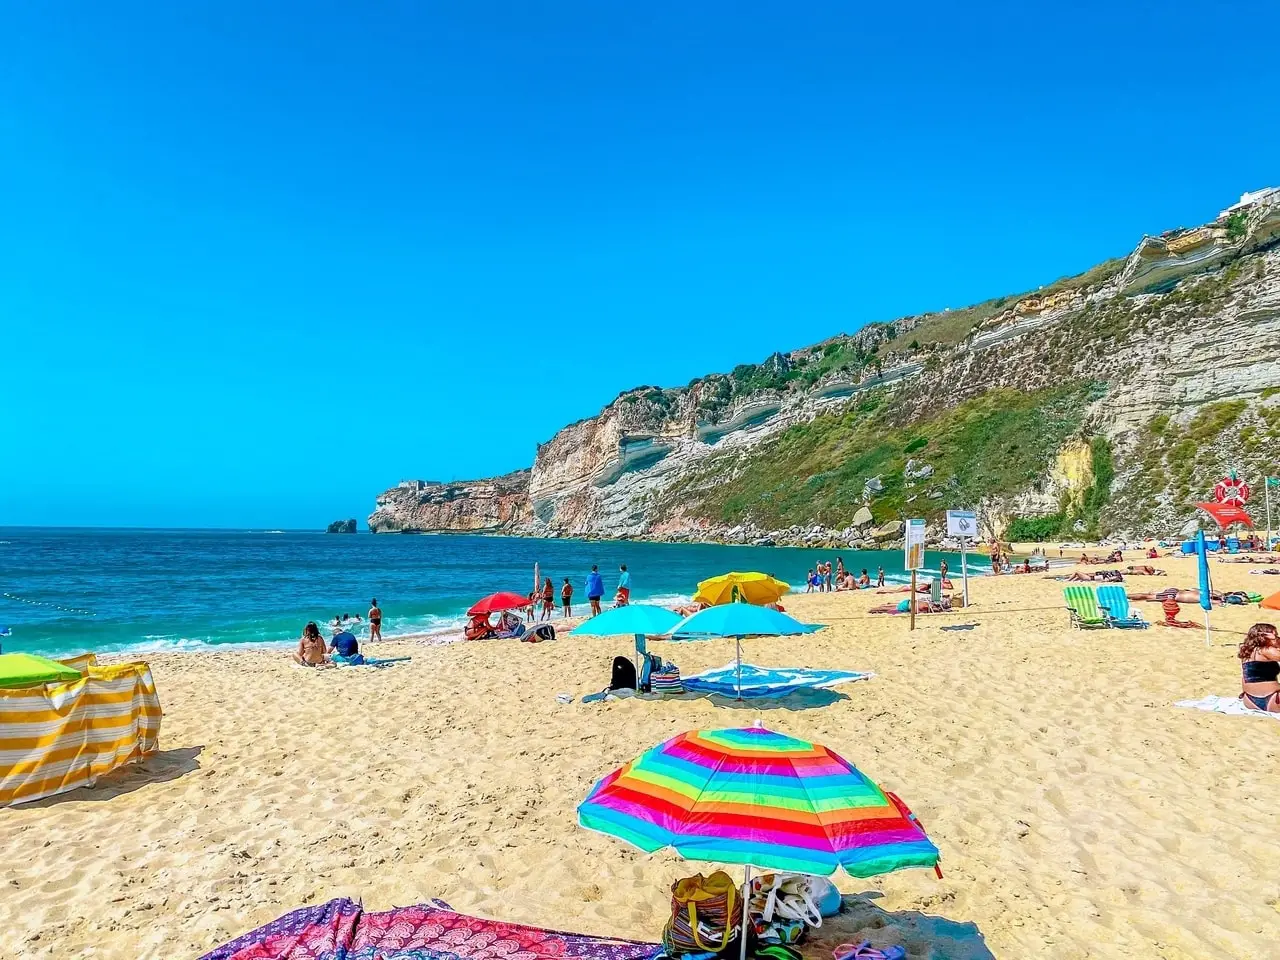 Praia da Nazare in warm weather, one of the beaches in Nazare Portugal.